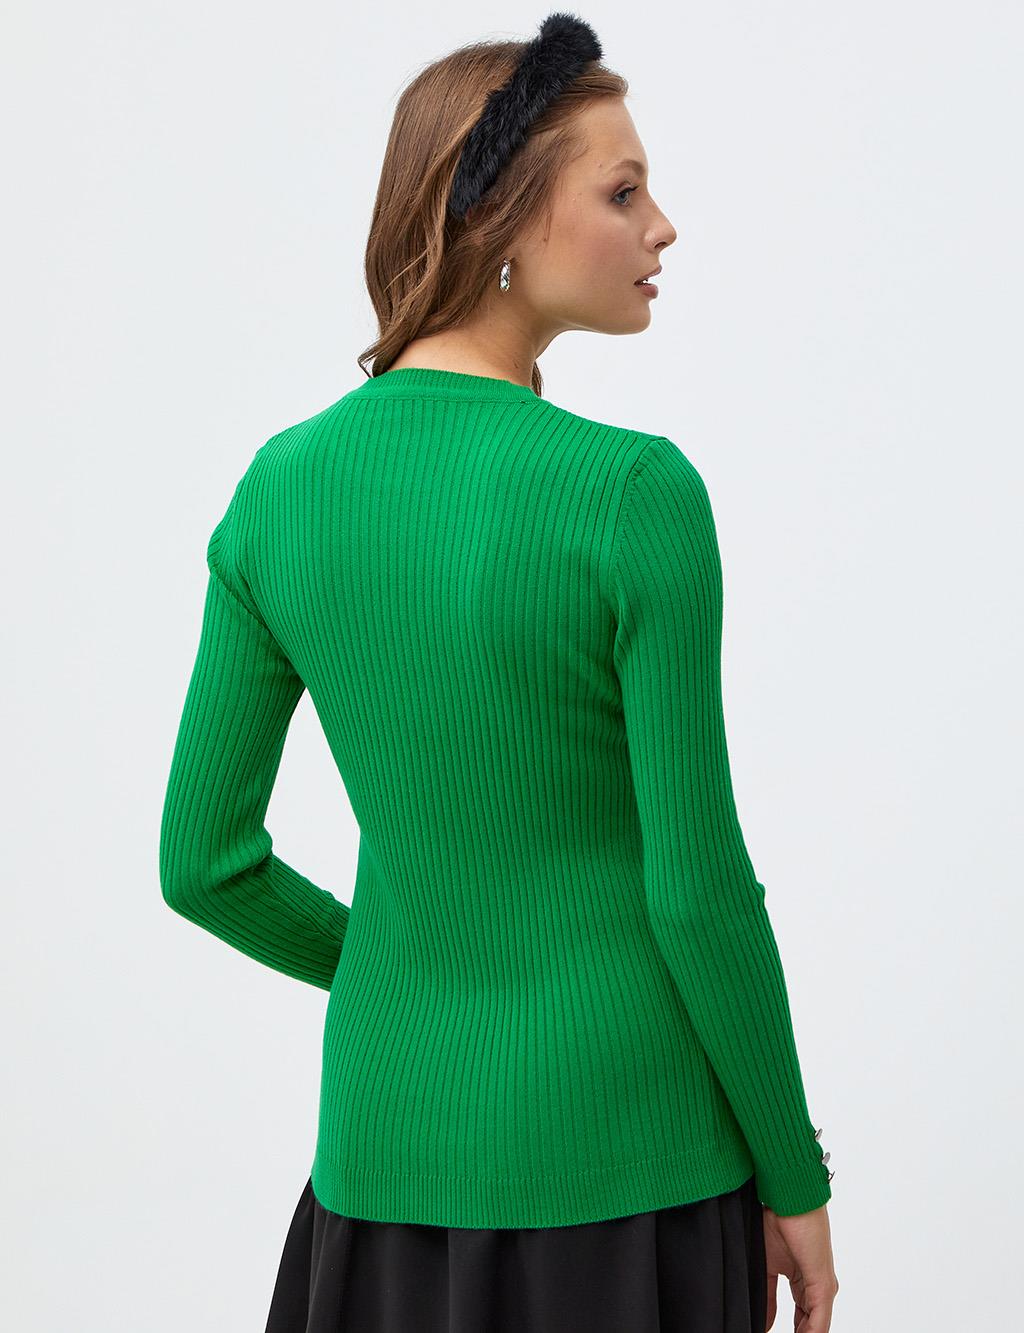 Round Neck Collar Corduroy Knitwear Blouse Grassgreen